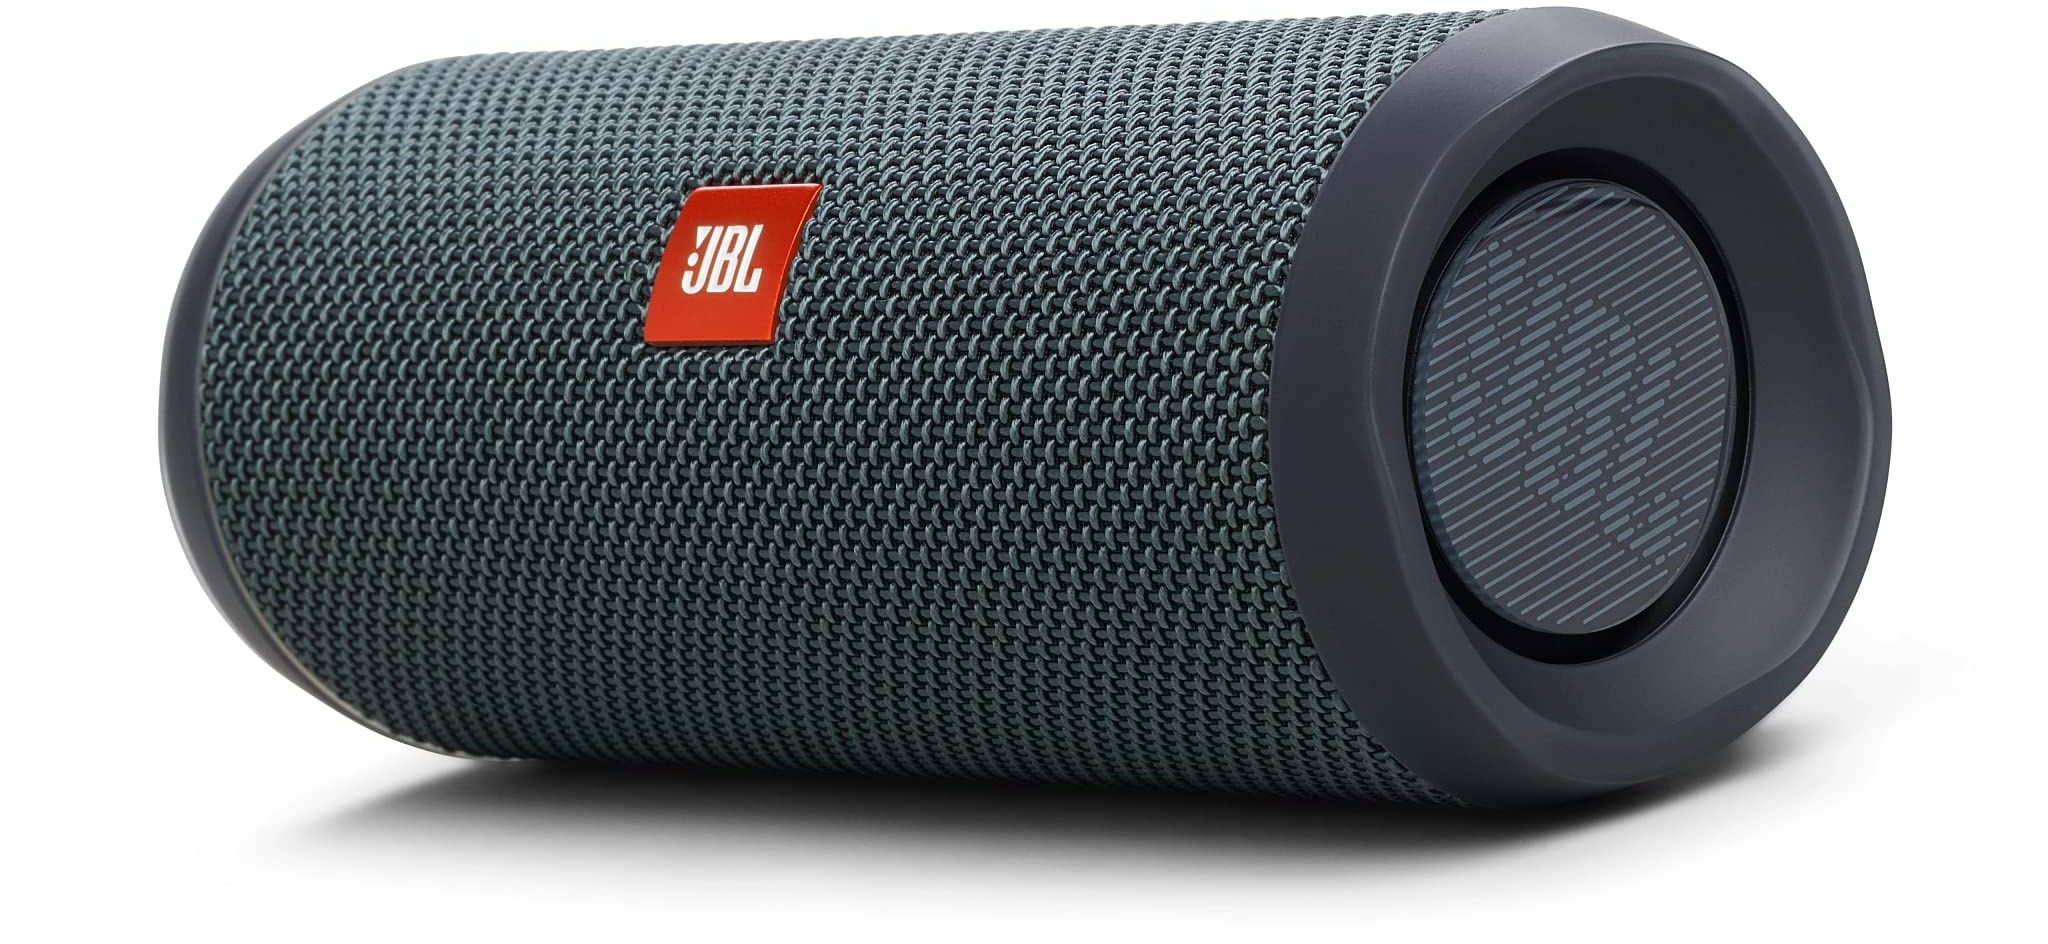 JBL Flip Essential 2 – Tragbarer Bluetooth-Lautsprecher mit wiederaufladbarem Akku – IPX7 wasserdicht – 10 Stunden Akkulaufzeit – In Schwarz